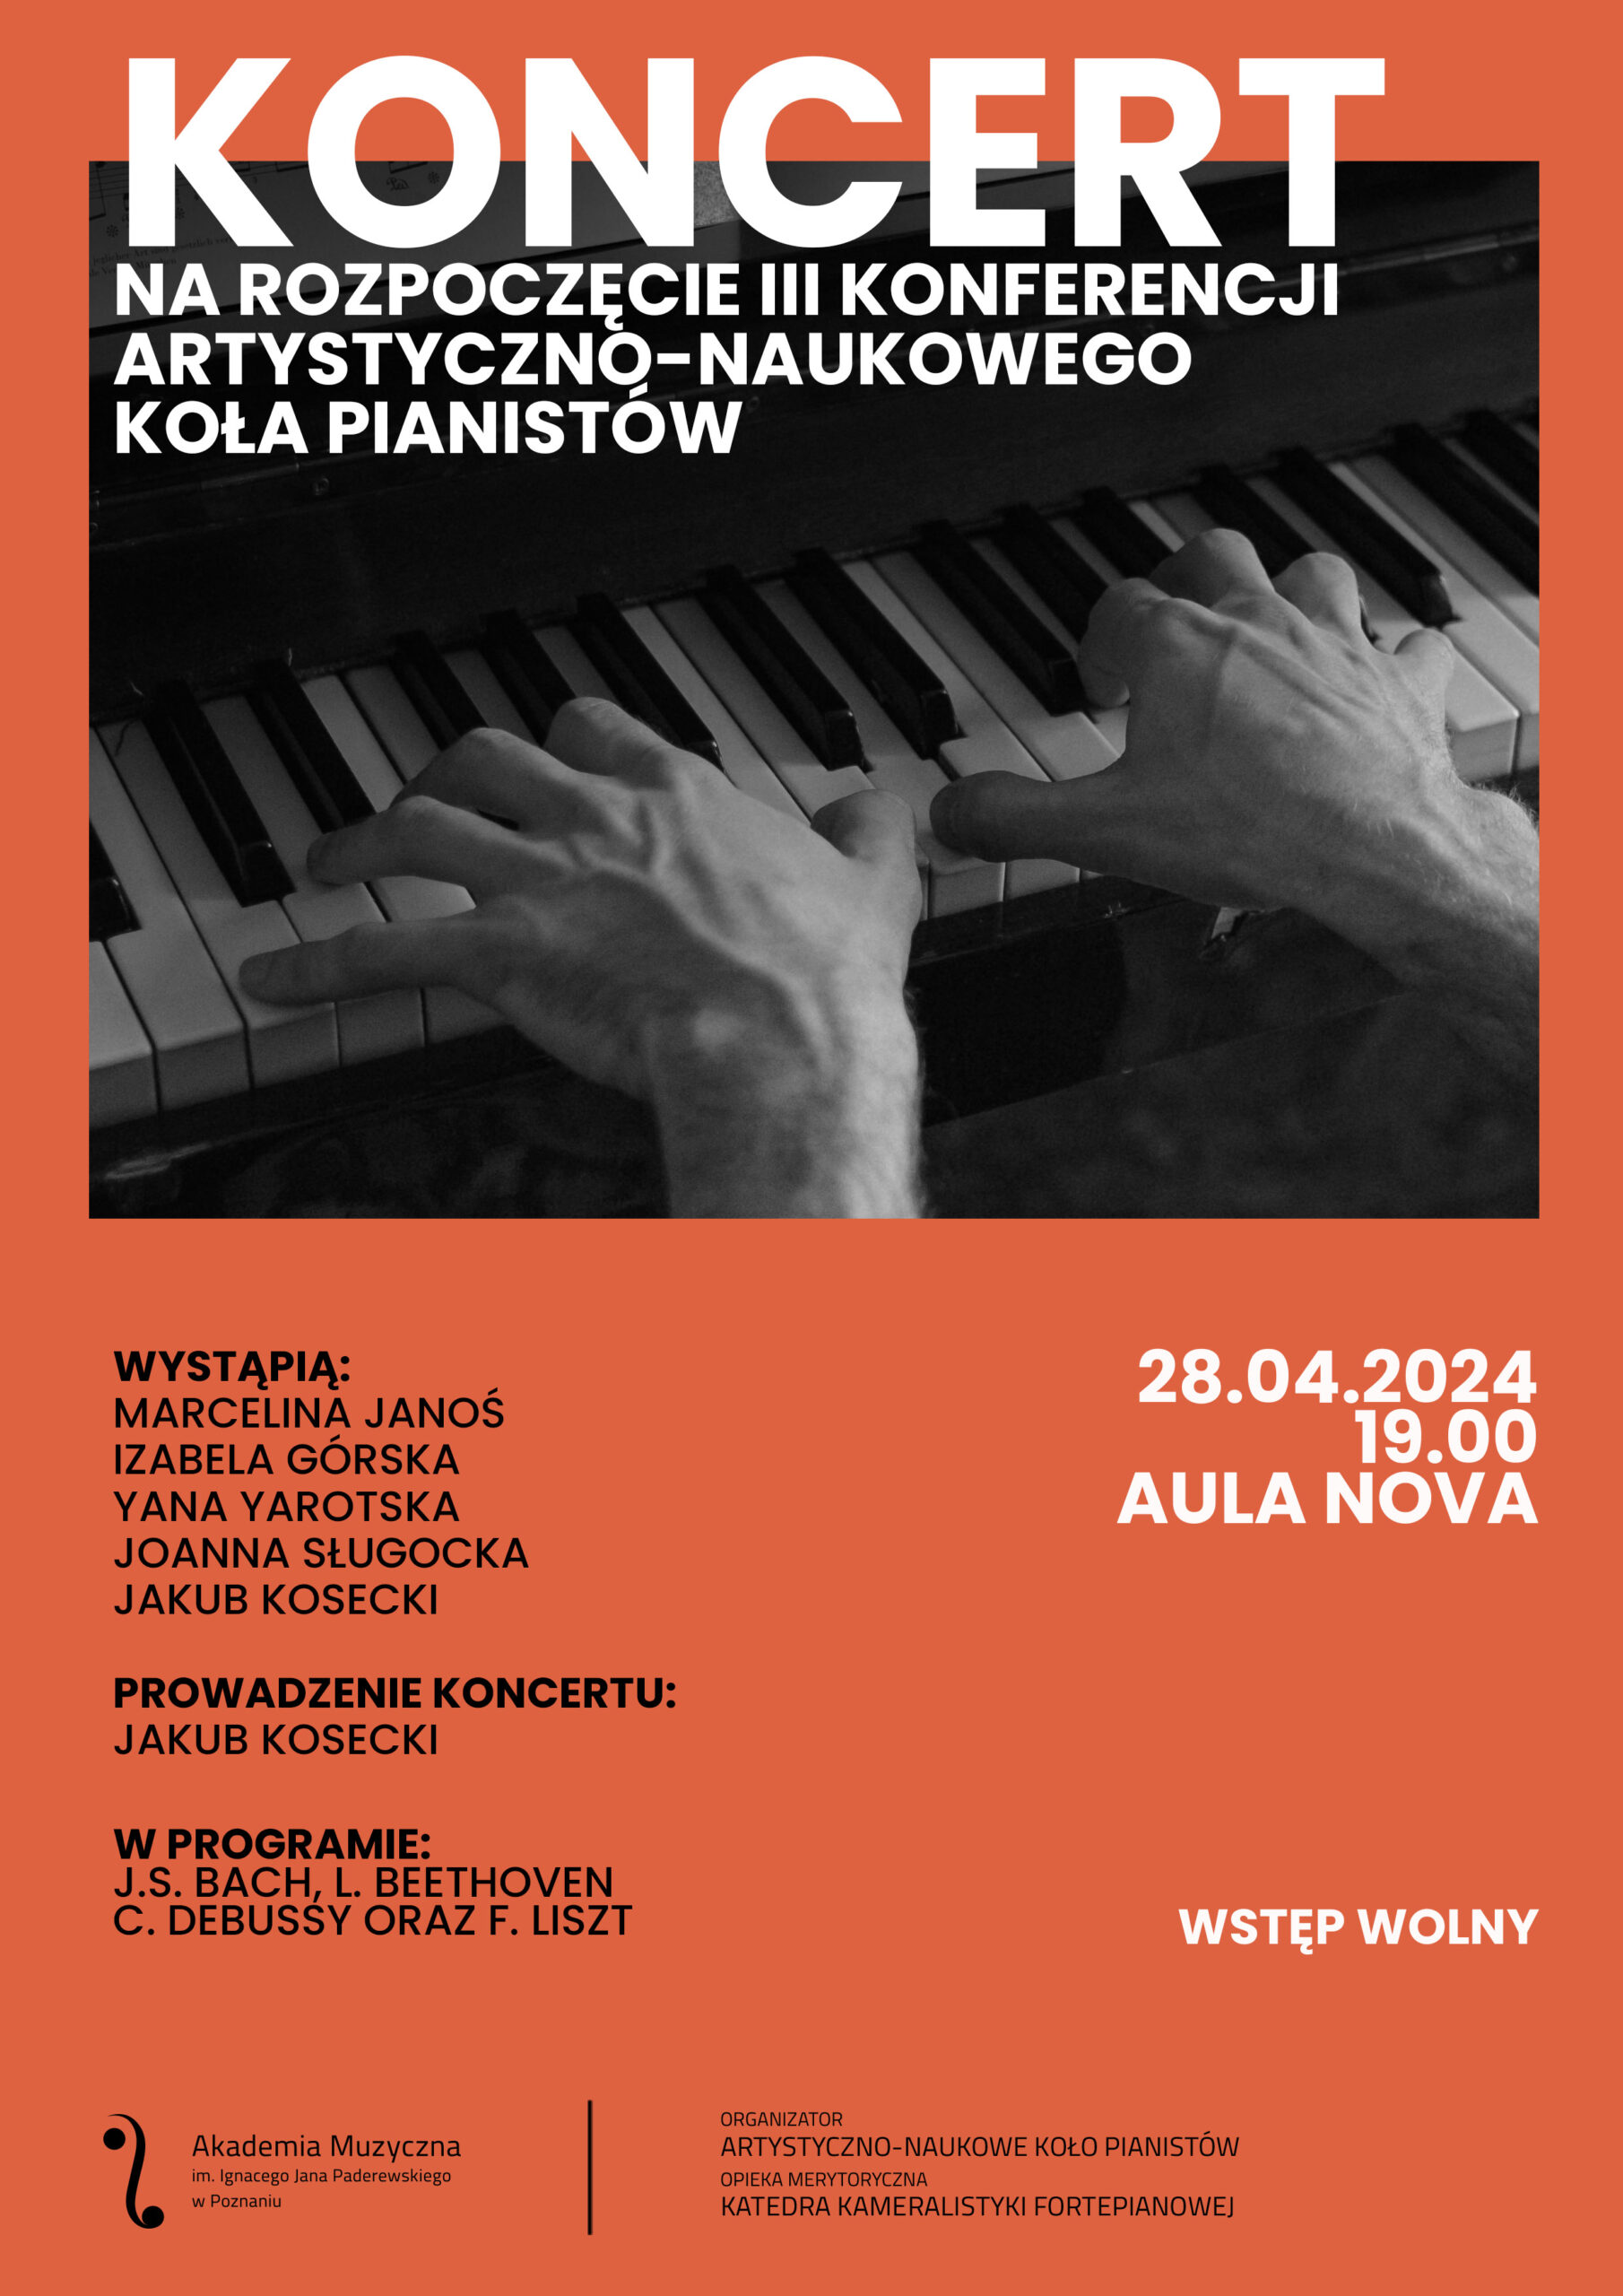 Plakat zawiera informacje na temat koncertu Artystyczno-Naukowego Koła Pianistów w dniu 28 kwietnia 2024